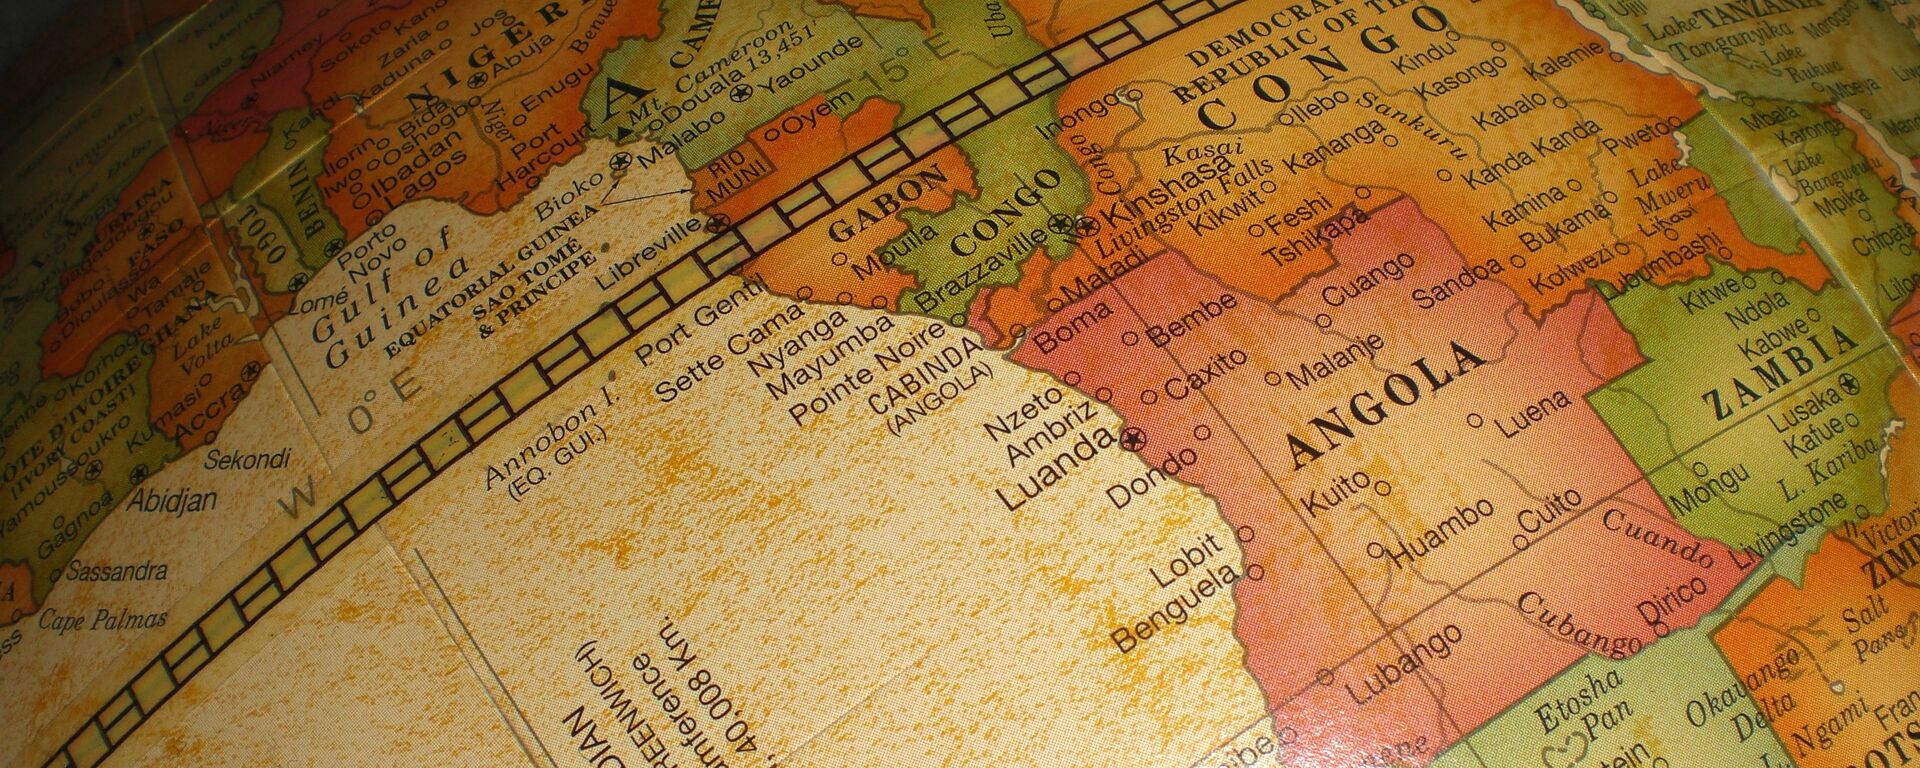 Mapa de África - Sputnik Mundo, 1920, 03.08.2018